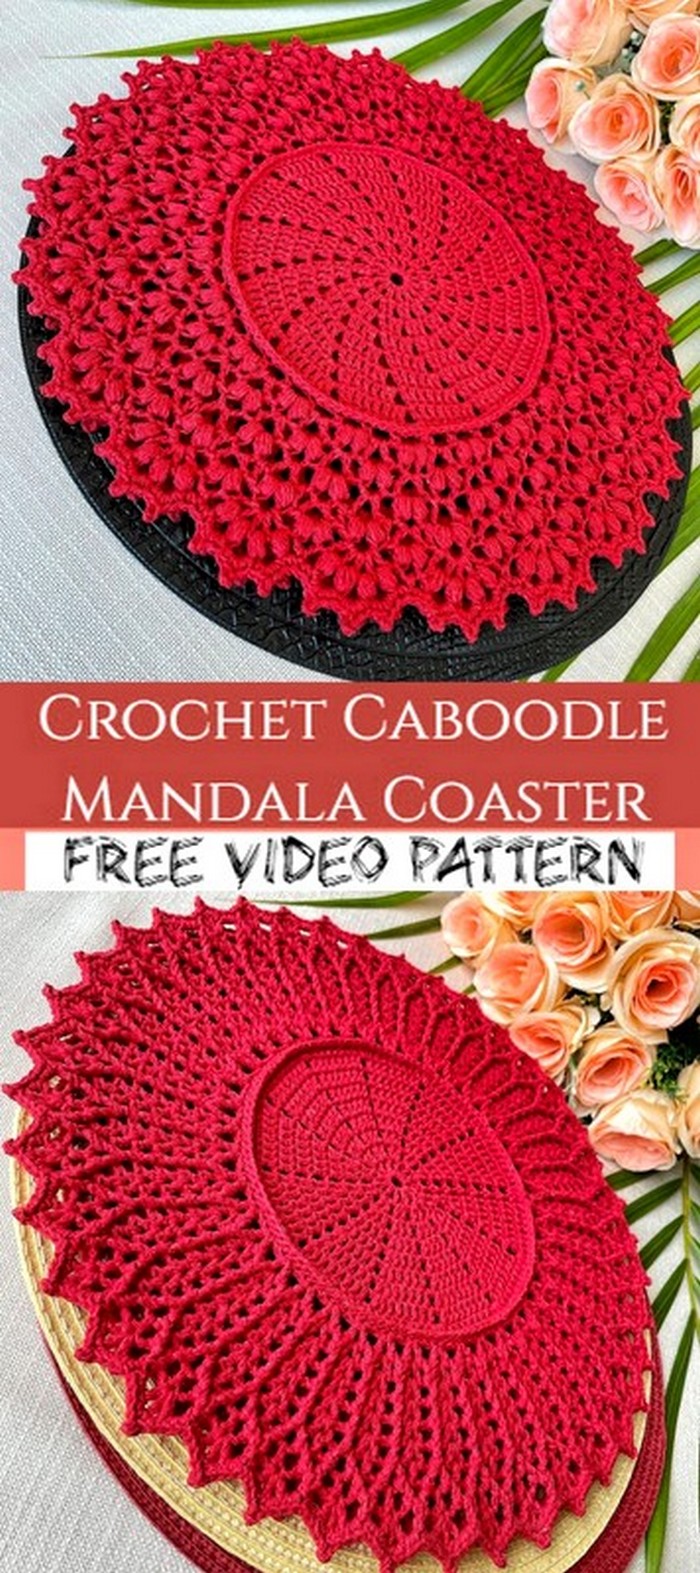 Crochet Caboodle Mandala Coaster